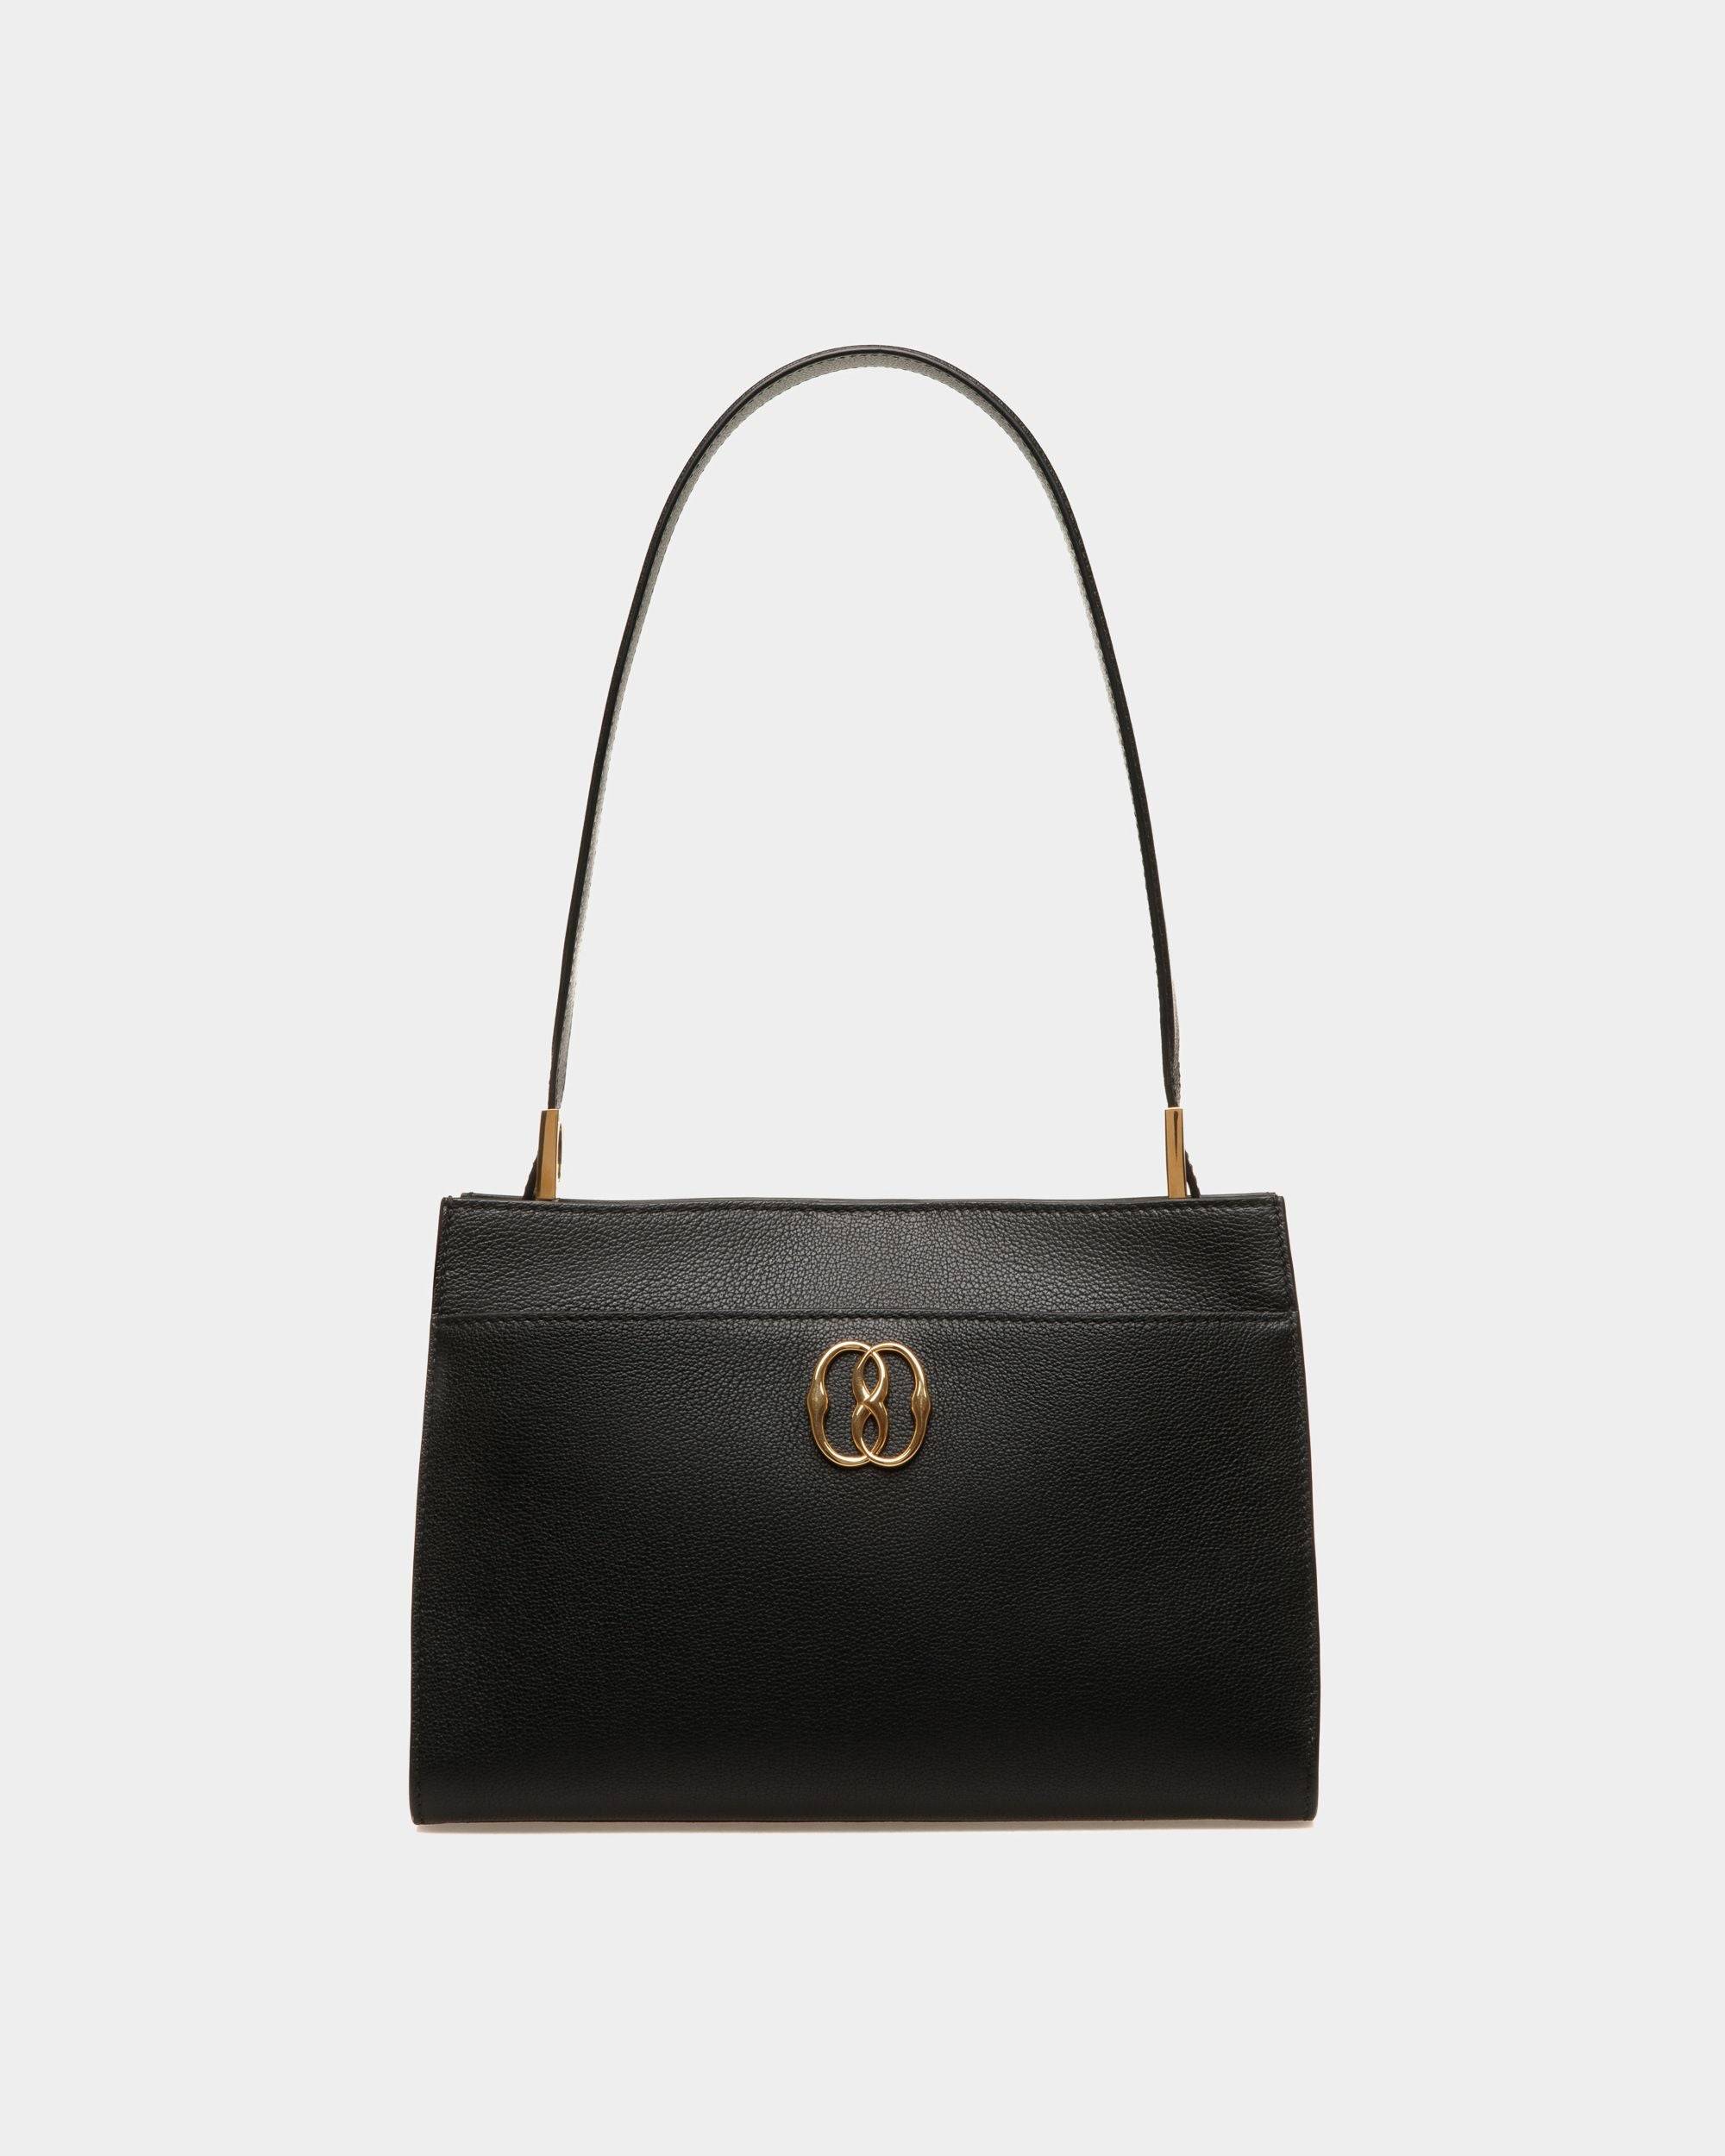 Women's Emblem Shoulder Bag In Black Grained Leather | Bally | Still Life Front